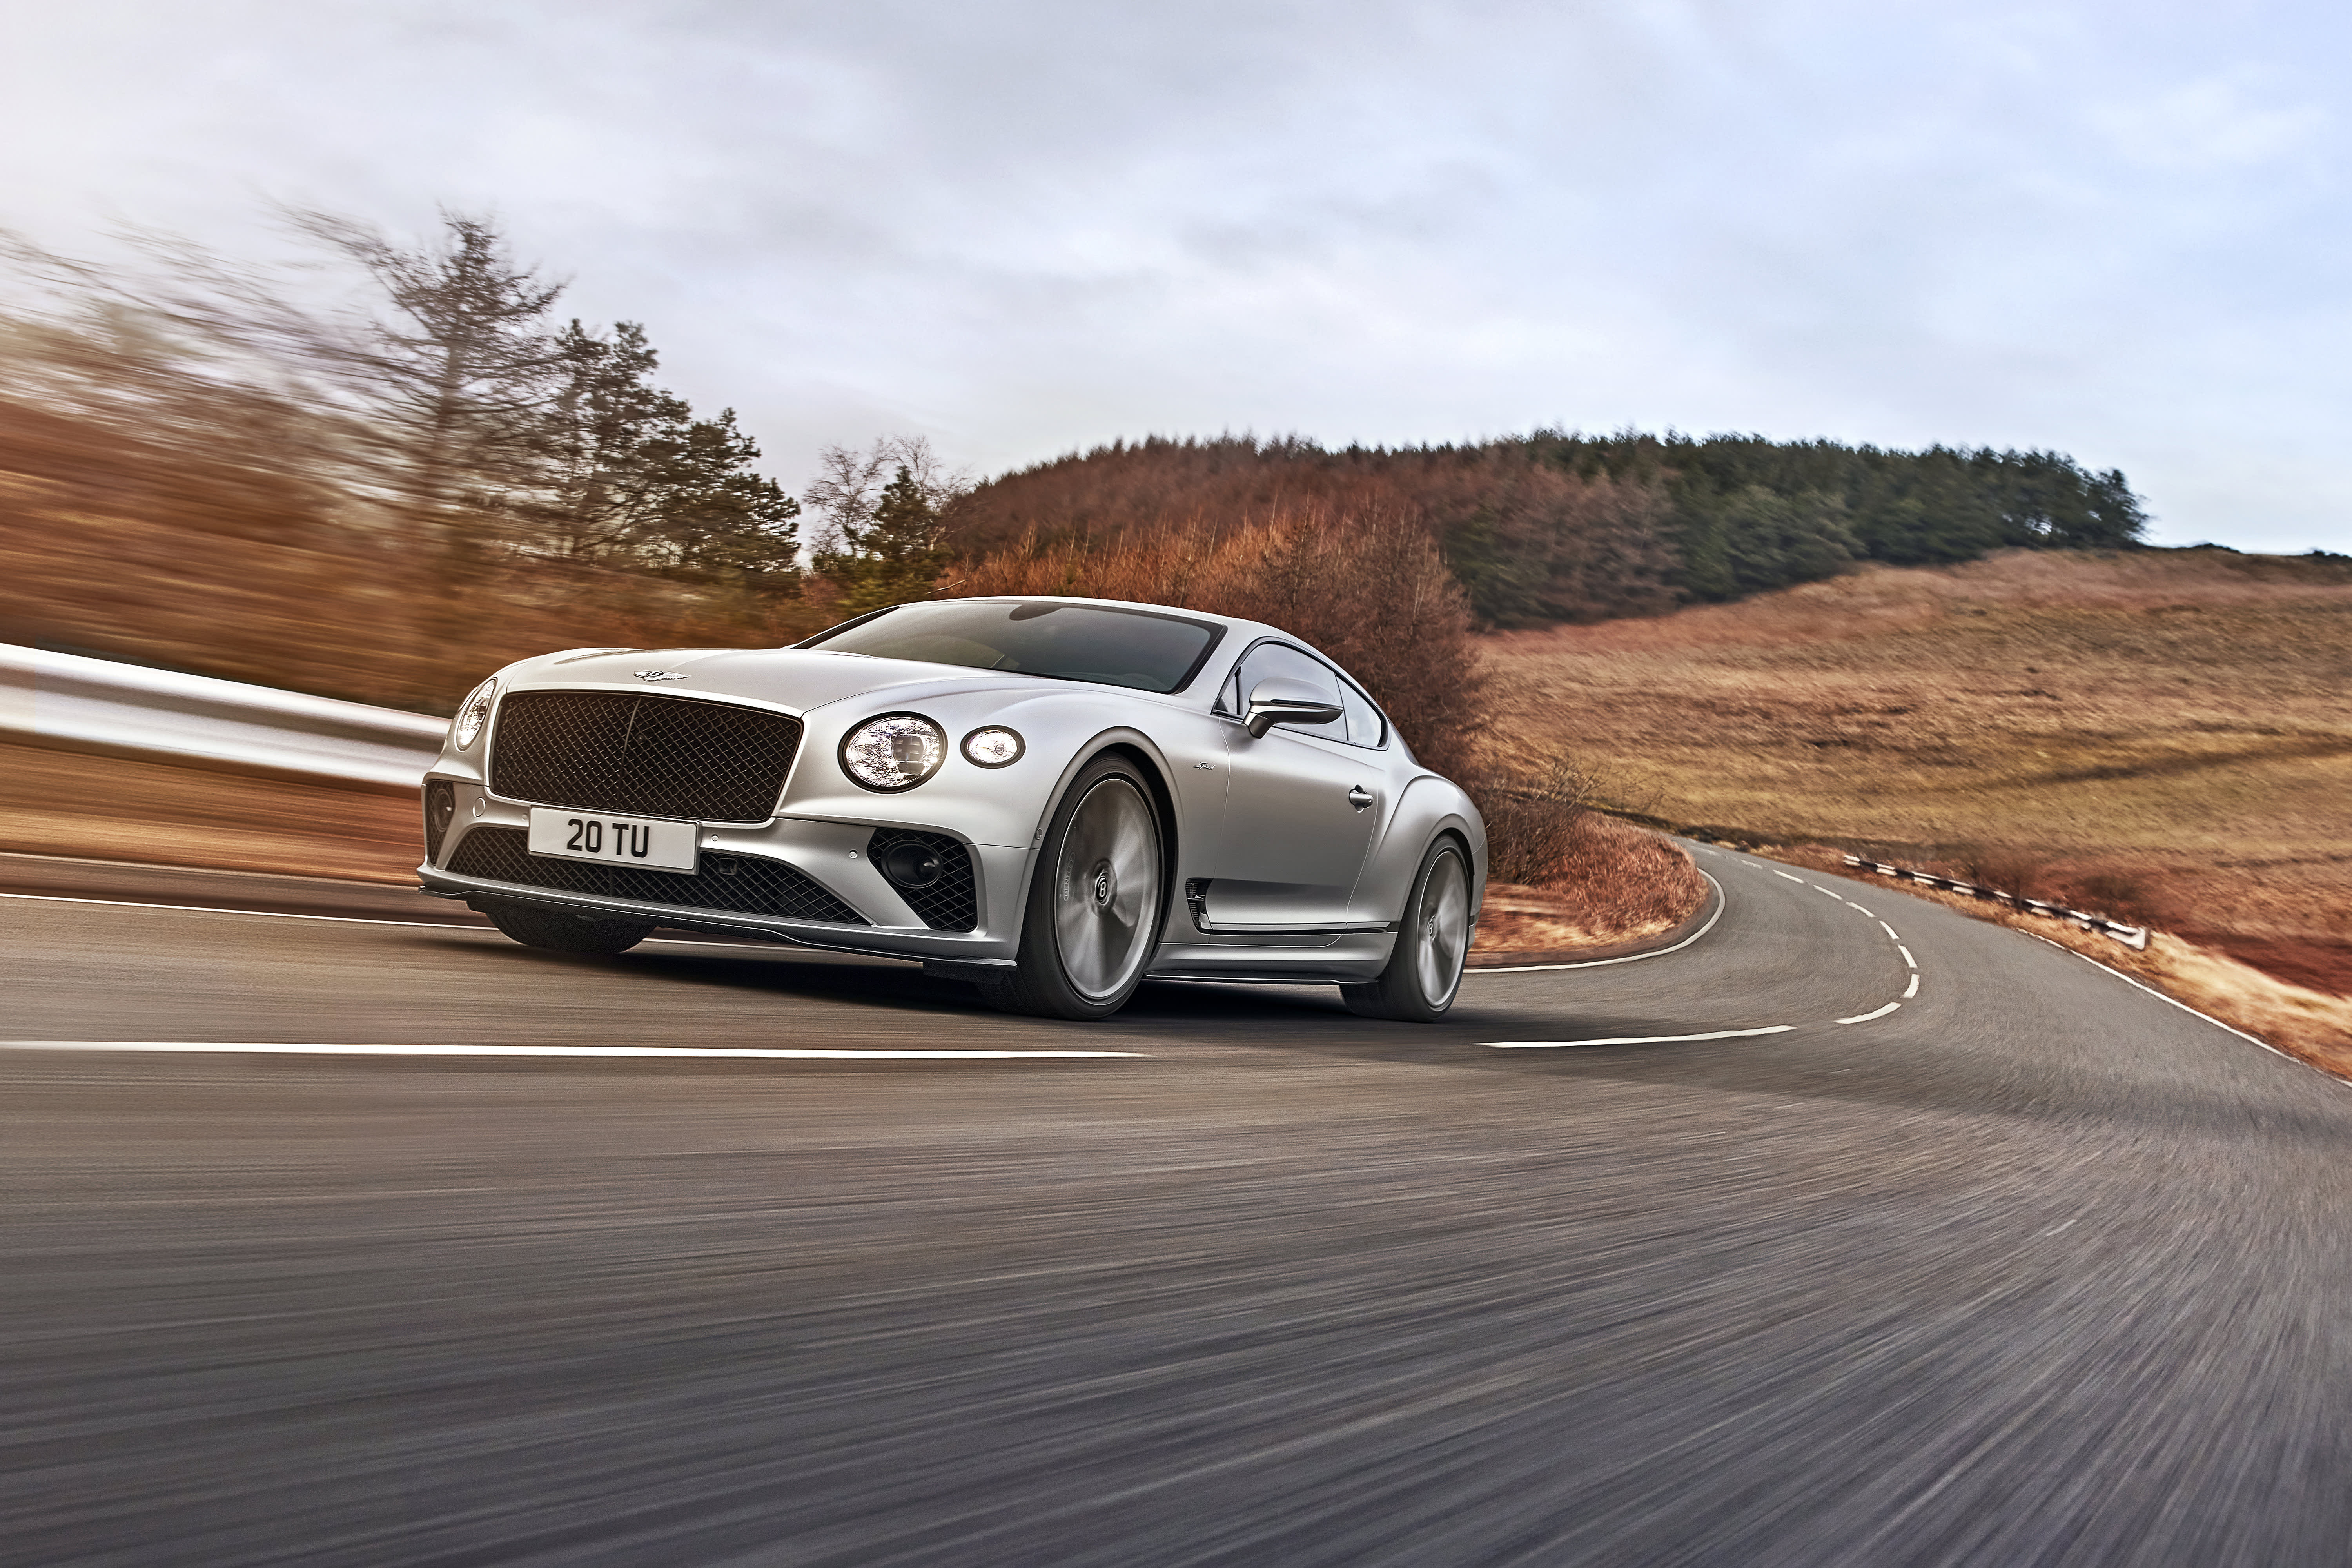 Susipažinkite su naujuoju „Continental GT Speed“, kurio greitis siekia 208 mylių per valandą už 275 000 USD